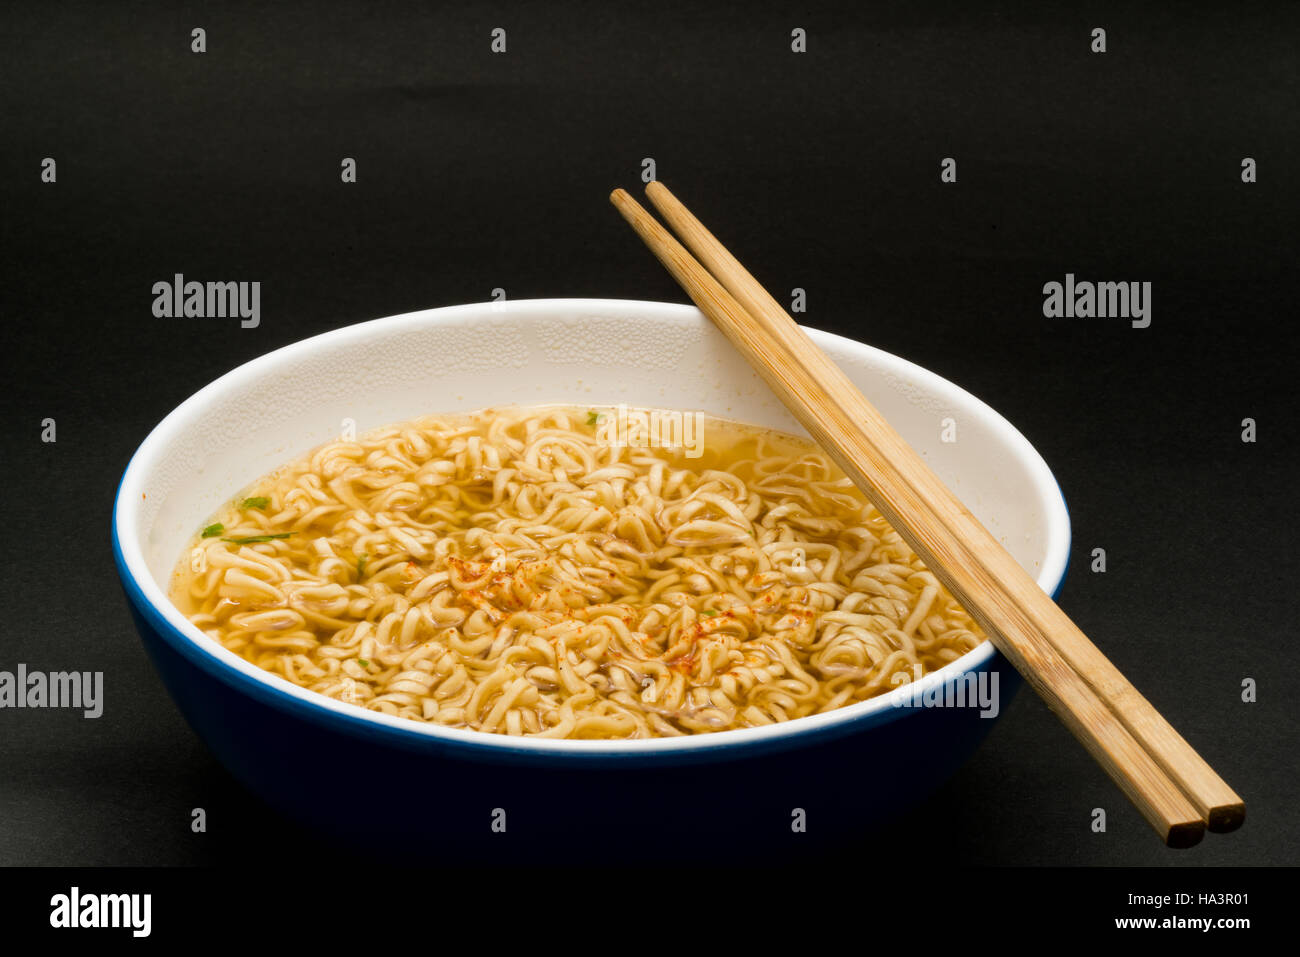 Istante di cotto riso tagliatelle in una ciotola su sfondo scuro Foto Stock